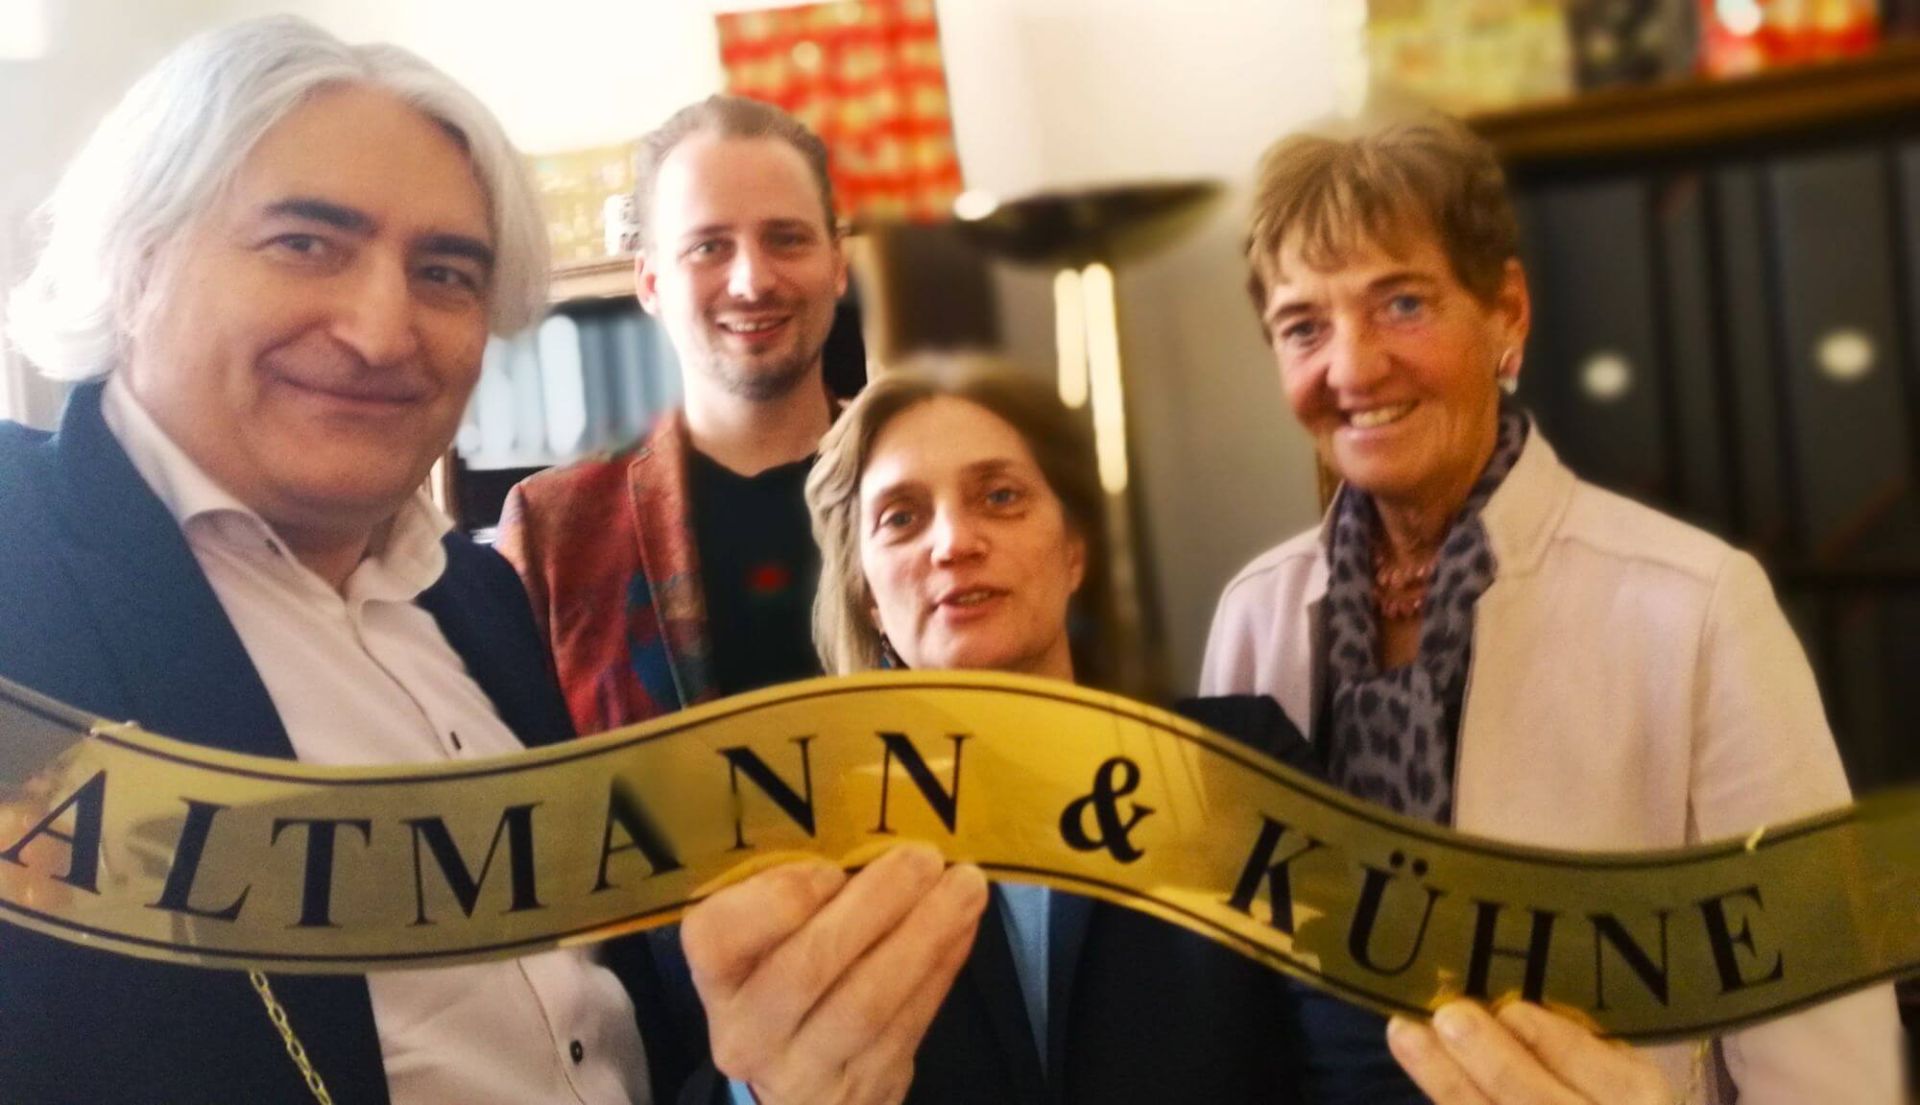 Selfie: Thomas Rihl und Jacky Proksch besuchen die Schokoladenmanufaktur Altmann & Kühne